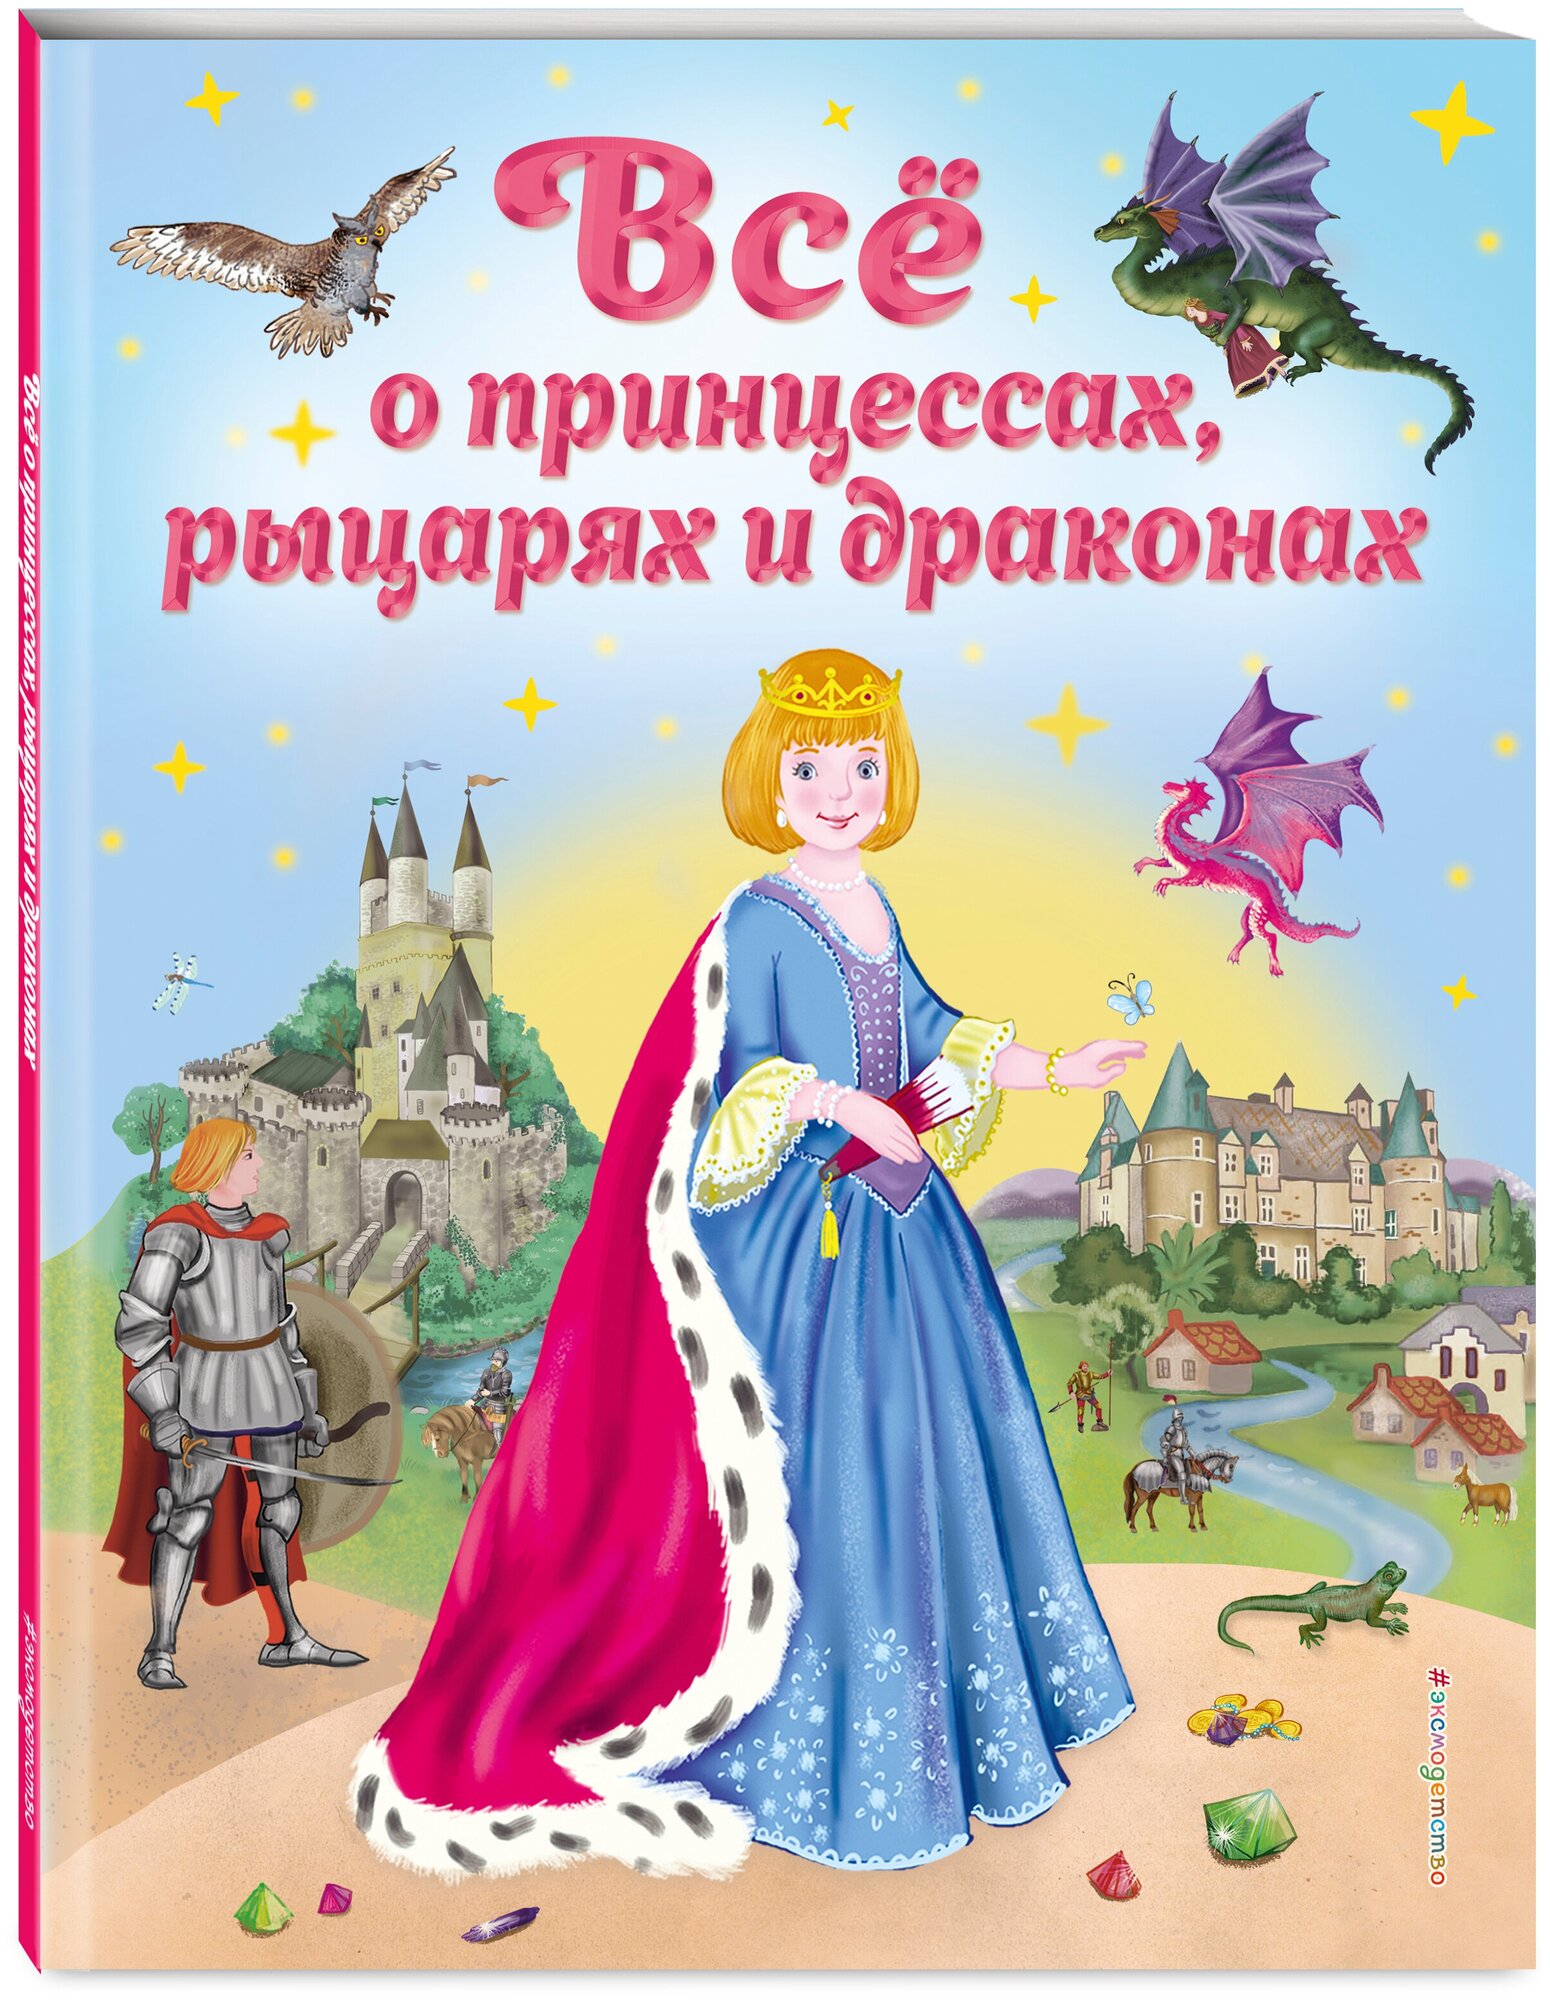 Фиалкина В. Все о принцессах, рыцарях и драконах (ил. С. Адалян)